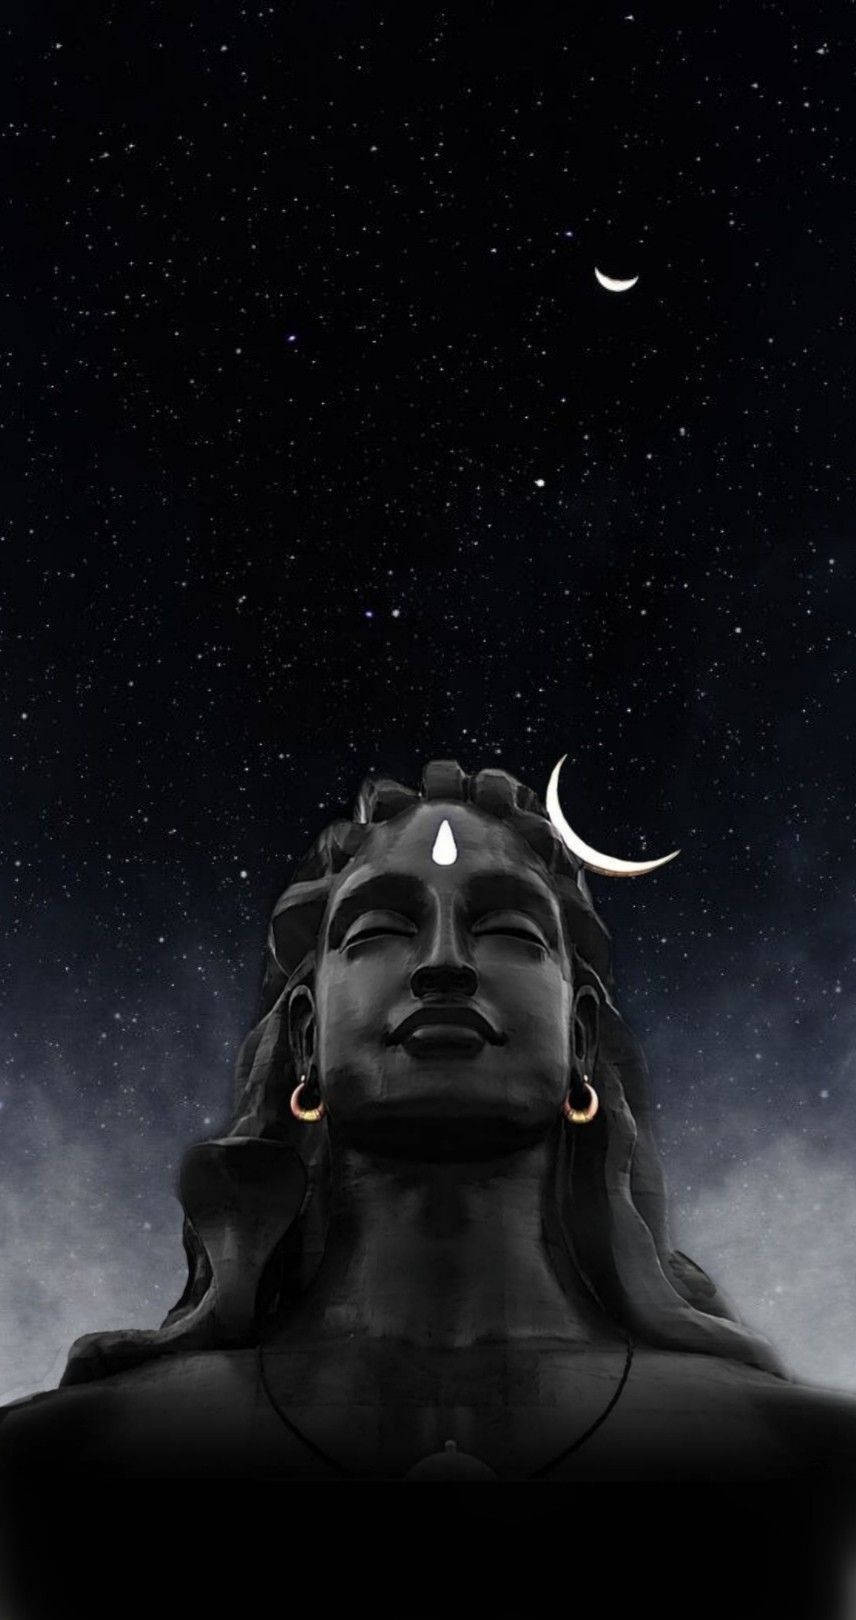 Mahadev Rudra Avatar Bust At Night Wallpaper